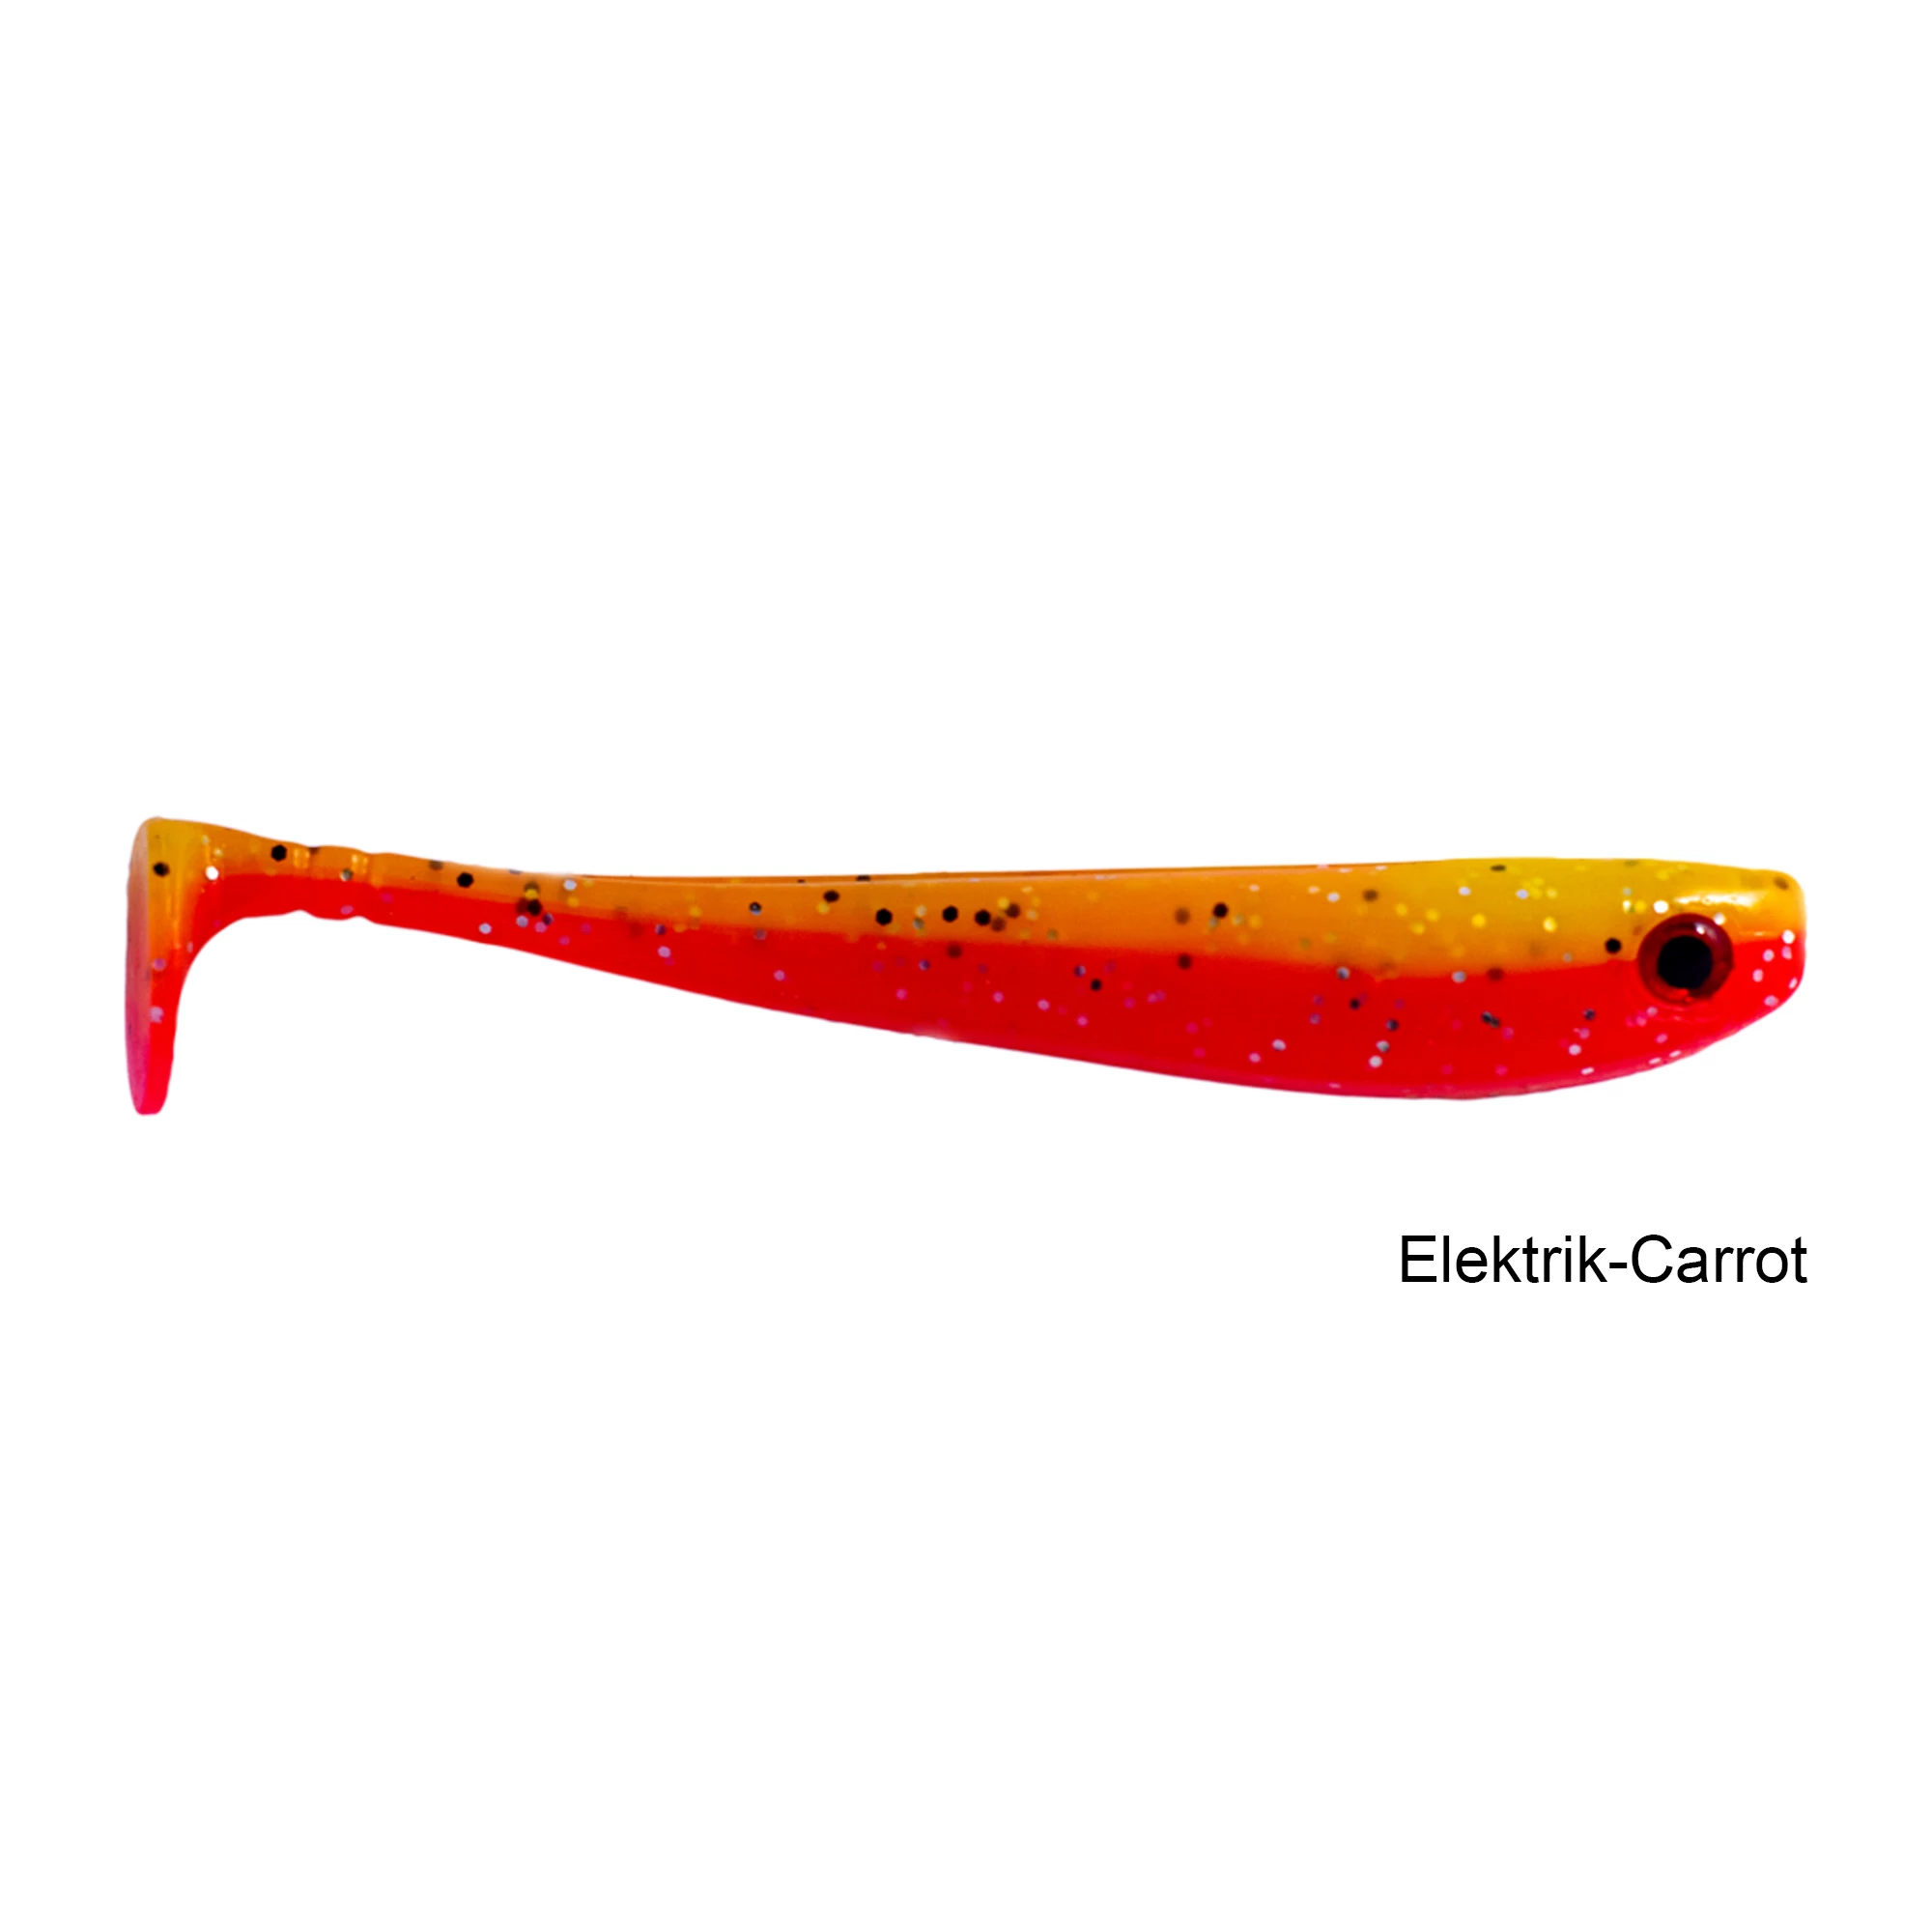 Gapshad GapShad 11,5cm Elektrik Carrot